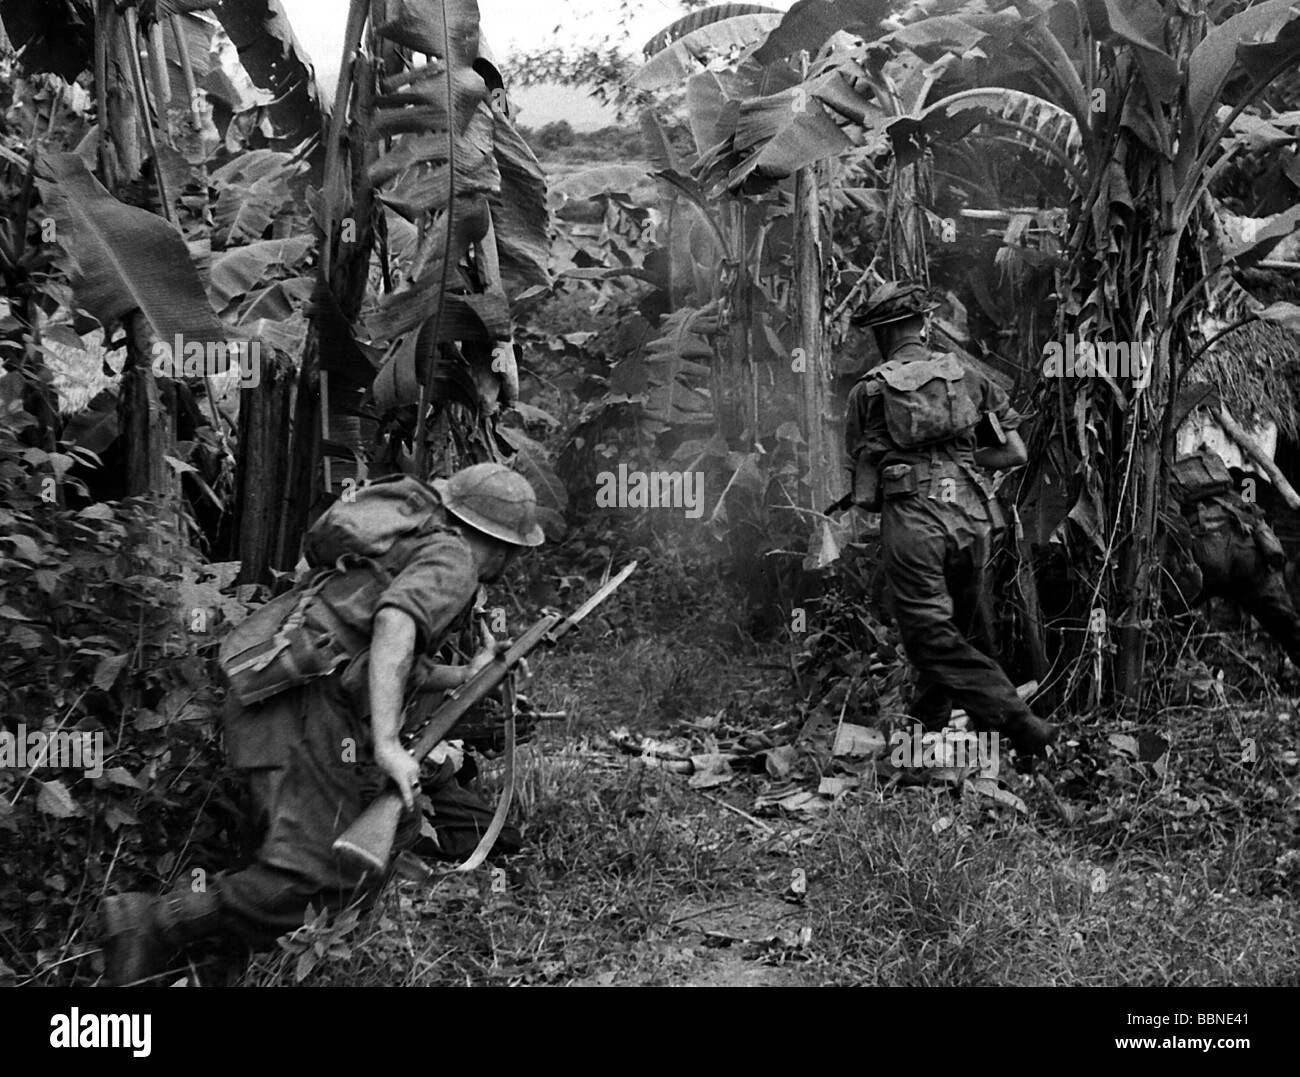 Eventi, Seconda guerra mondiale / seconda guerra mondiale, Asia sudorientale, Birmania, soldati britannici che avanzano in un boschetto di banane, circa 1944 / 1945, Foto Stock